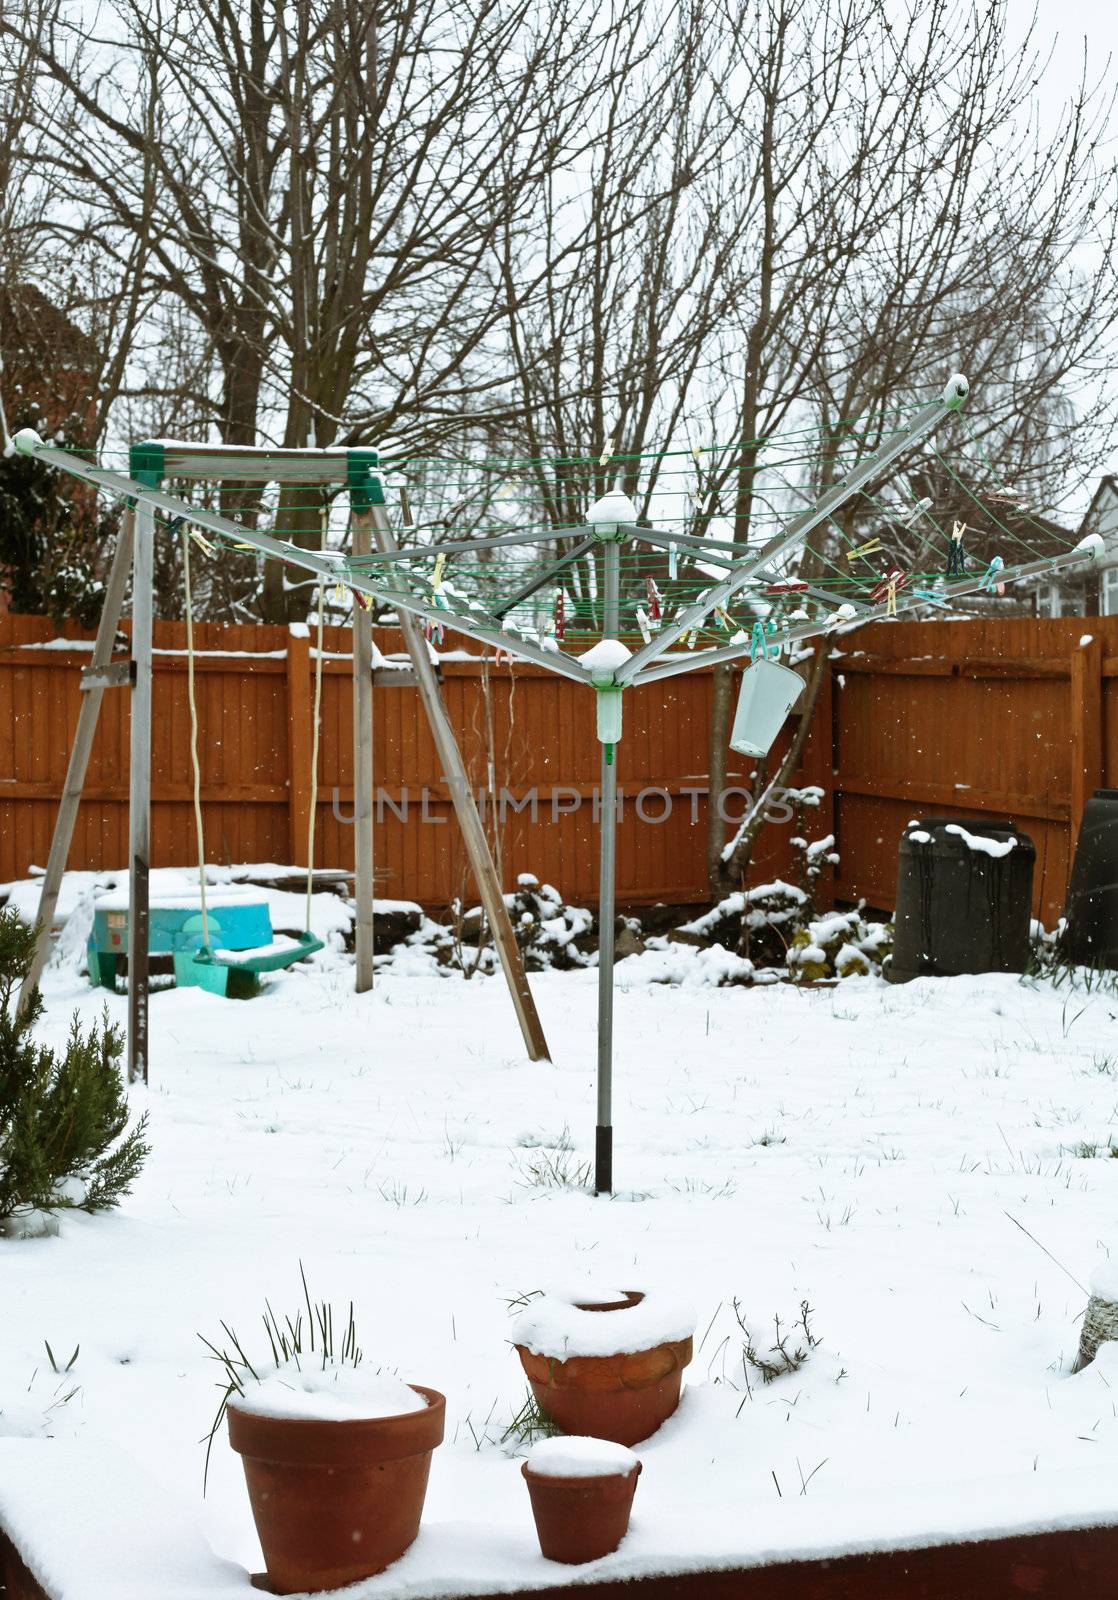 Garden in the snow by trgowanlock